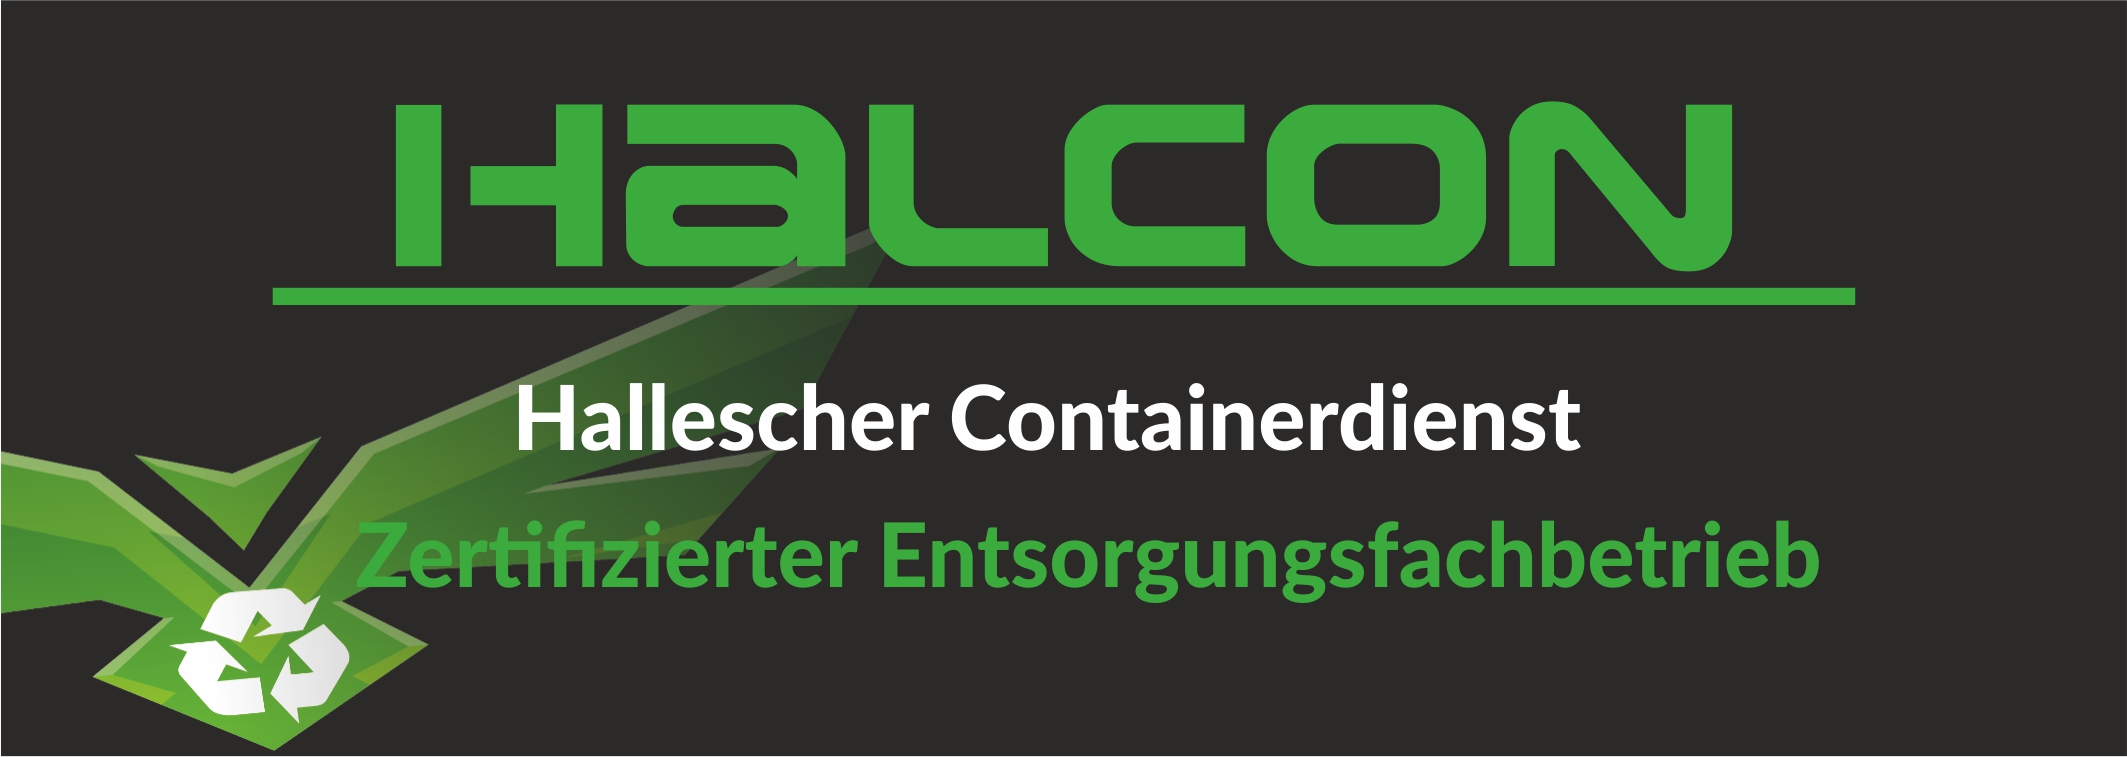 HALCON - Saalebulls Sponsor